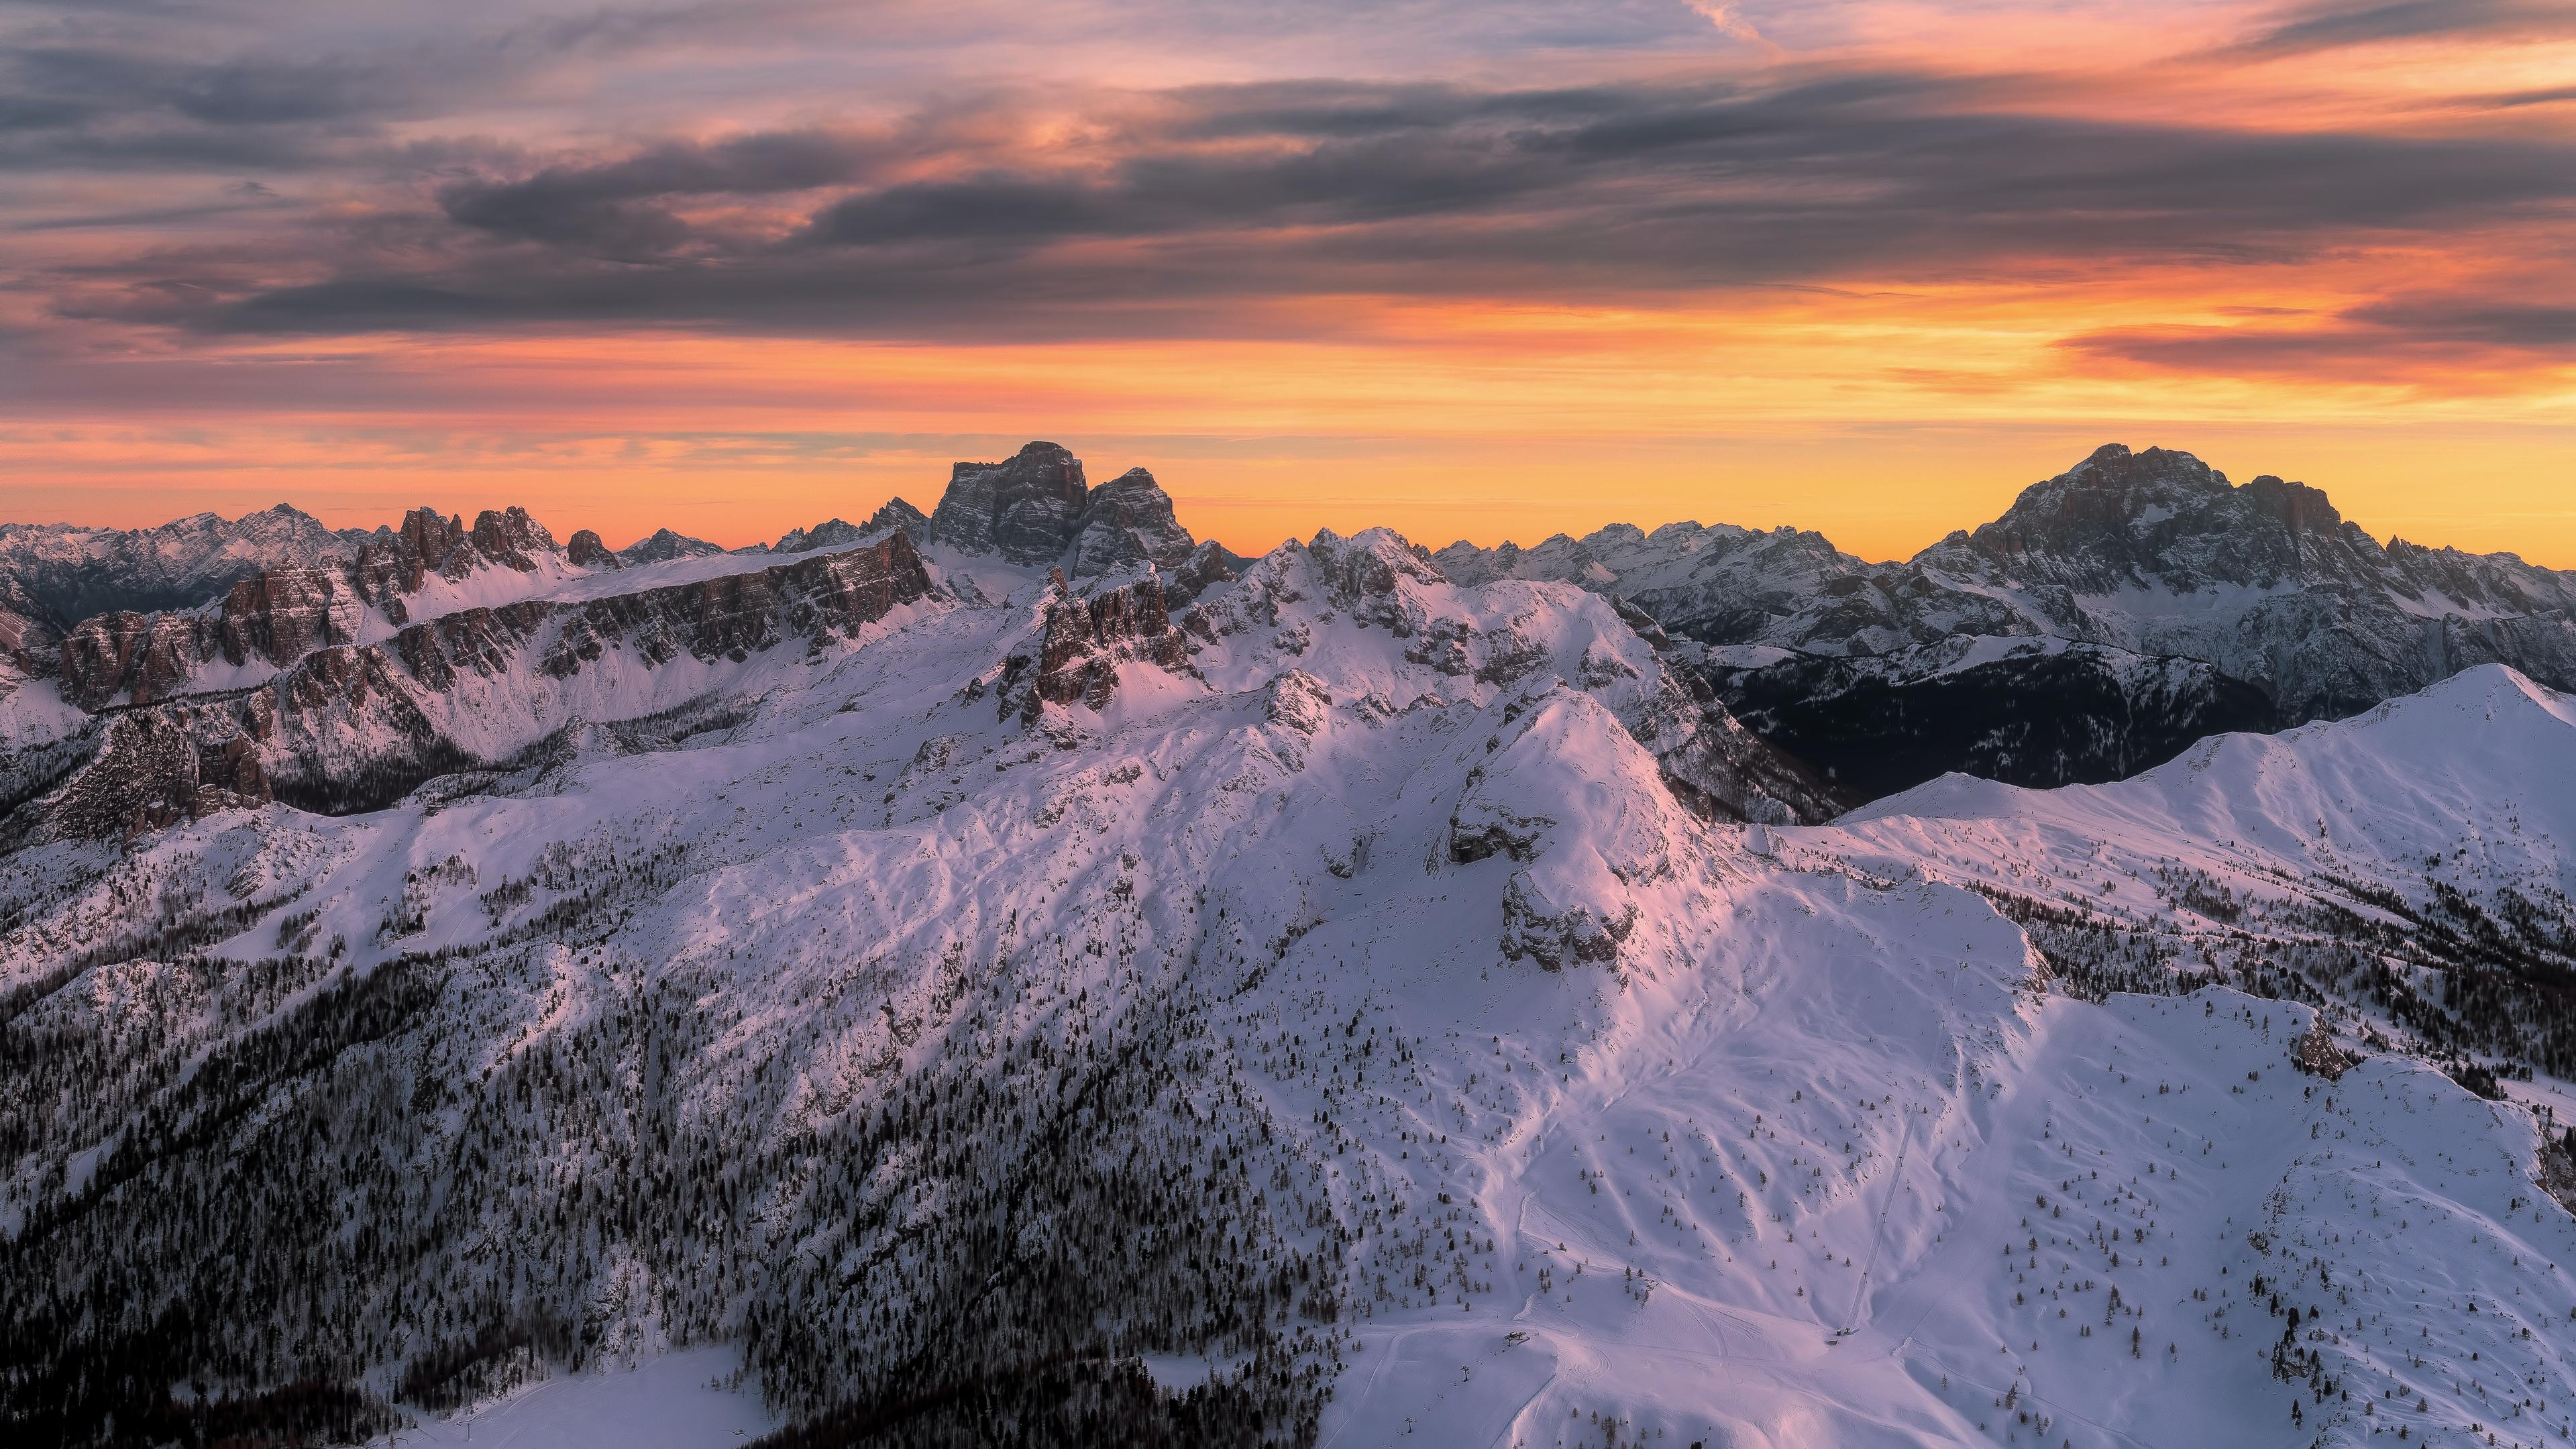 The view from Piccolo Lagazuoi, Cortina d'Ampezzo, Italy